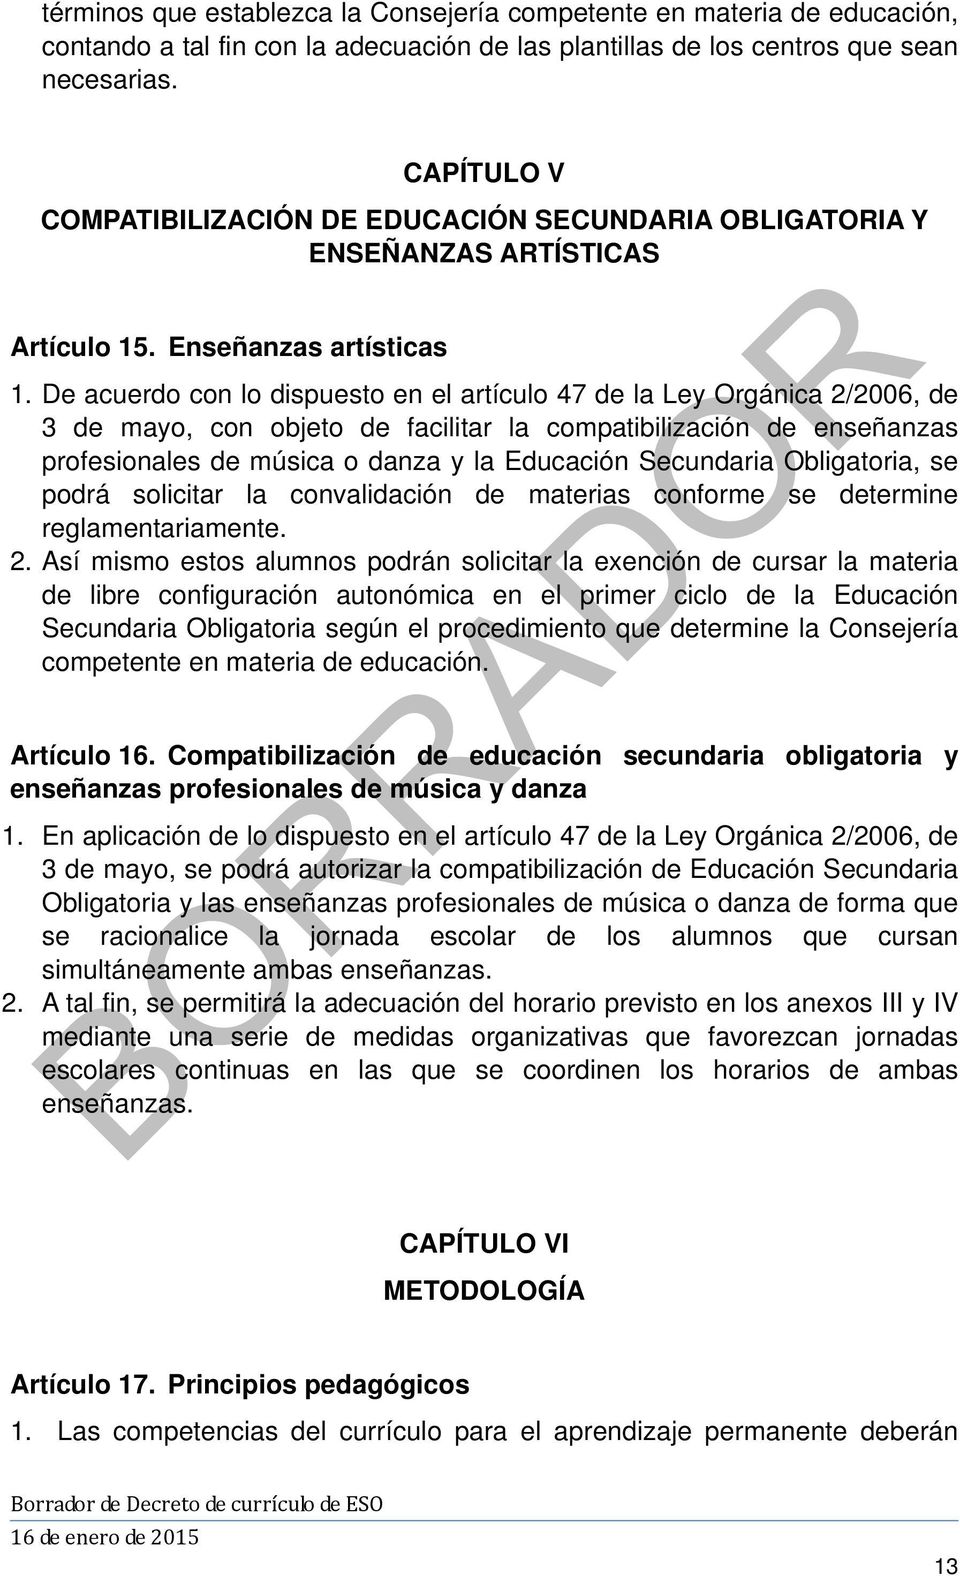 De acuerdo con lo dispuesto en el artículo 47 de la Ley Orgánica 2/2006, de 3 de mayo, con objeto de facilitar la compatibilización de enseñanzas profesionales de música o danza y la Educación